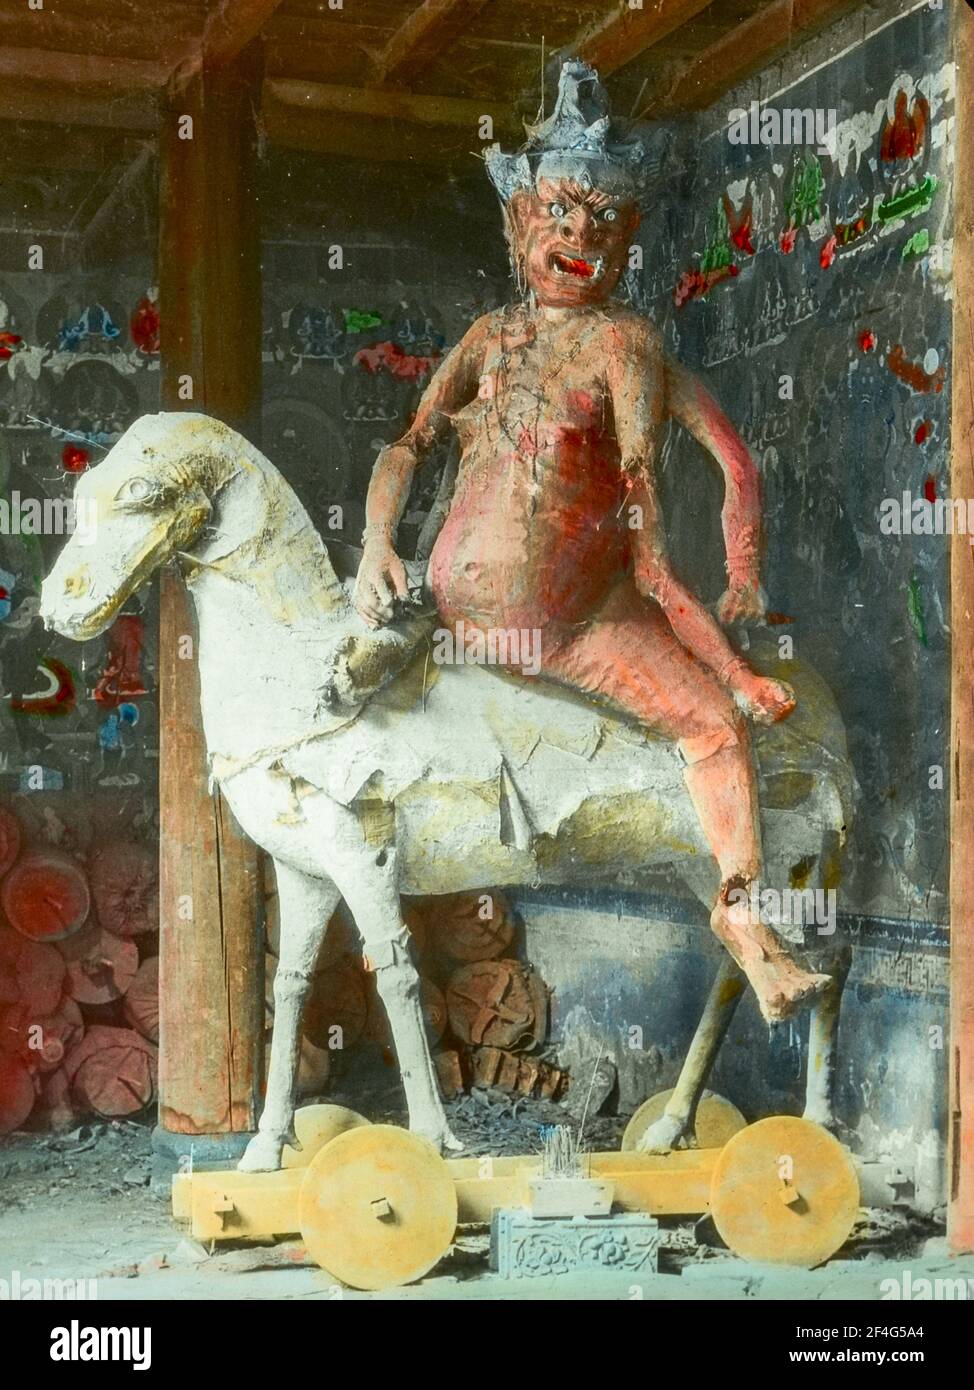 Sculpture de Yama, le roi de l'Enfer, représentée comme un démon à peau rouge, multi-armé, à cheval à roues, avec un mur peint en arrière-plan, Sichuan, Chine, 1917. De la collection de photographies Sidney D. Gamble. () Banque D'Images